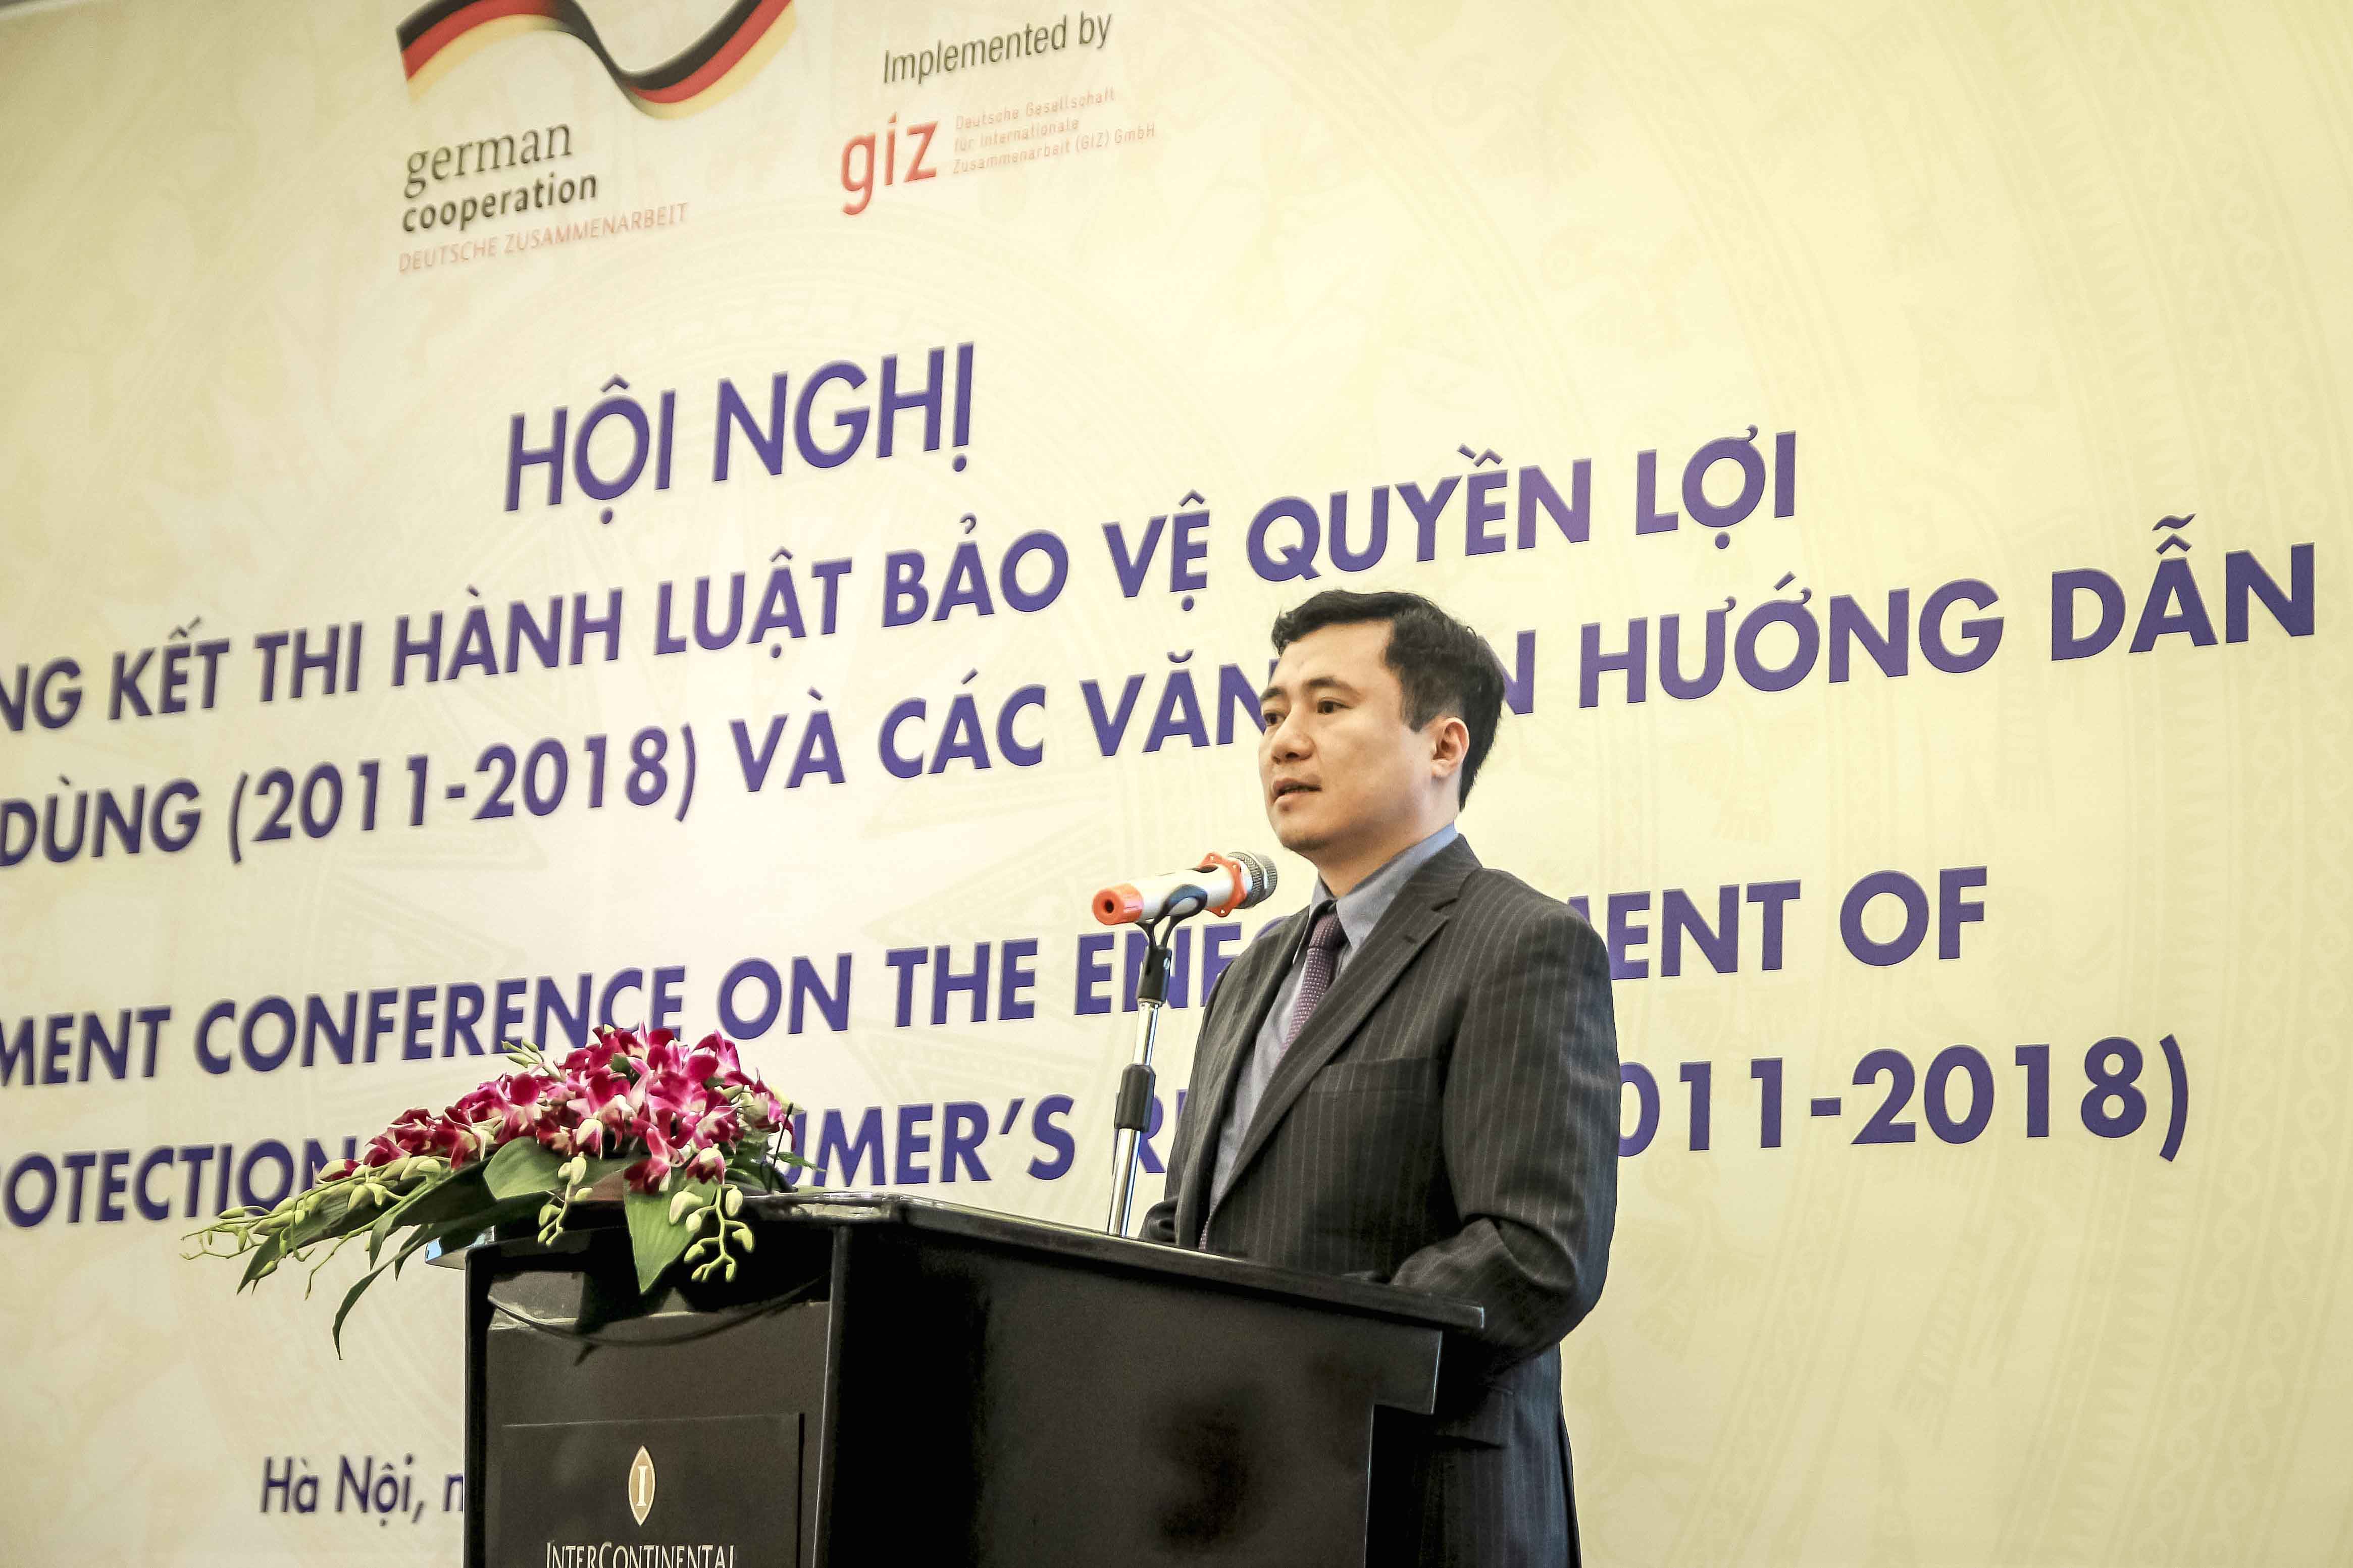 Cục trưởng Cục Cạnh tranh và Bảo vệ người tiêu dùng Nguyễn Sinh Nhật Tân nhận định việc thực thi Luật Bảo vệ quyền lợi người tiêu dùng đã đạt được nhiều kết quả tích cực